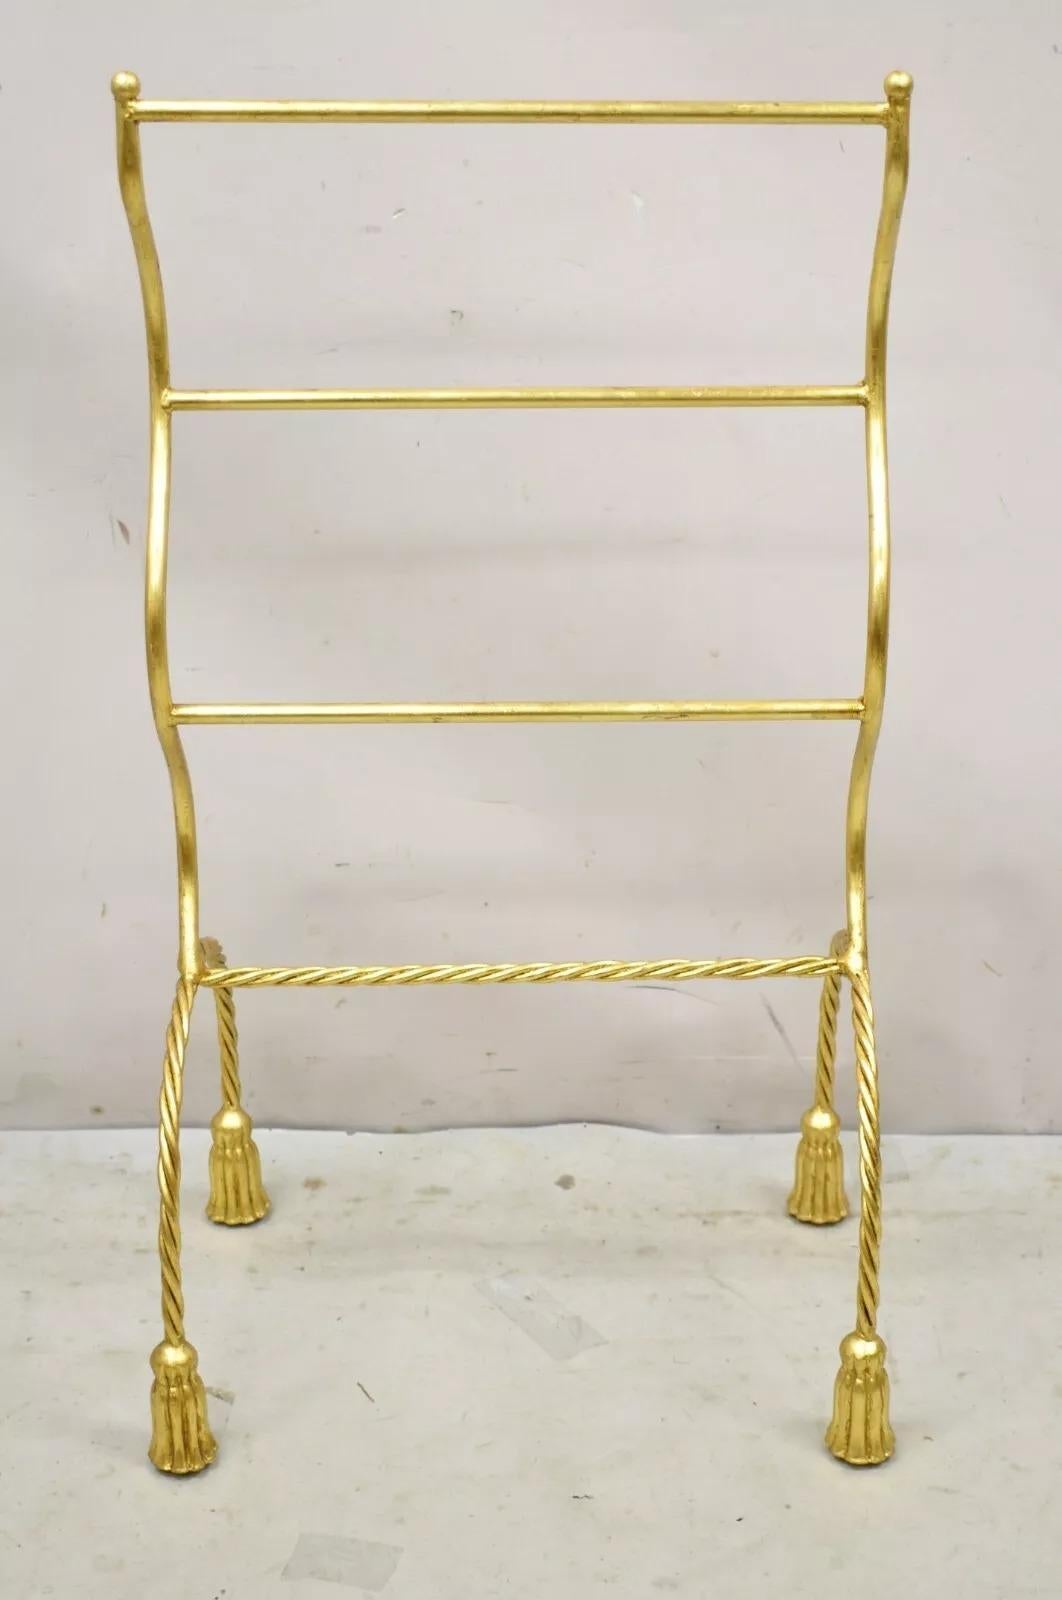 Vintage Italian Hollywood Regency Gold Gilt Metal Iron Towel Rack with Tassel Feet. Cet article présente une finition dorée, un cadre métallique sculptural, des pieds en forme de houppes, une qualité d'exécution italienne, un style et une forme